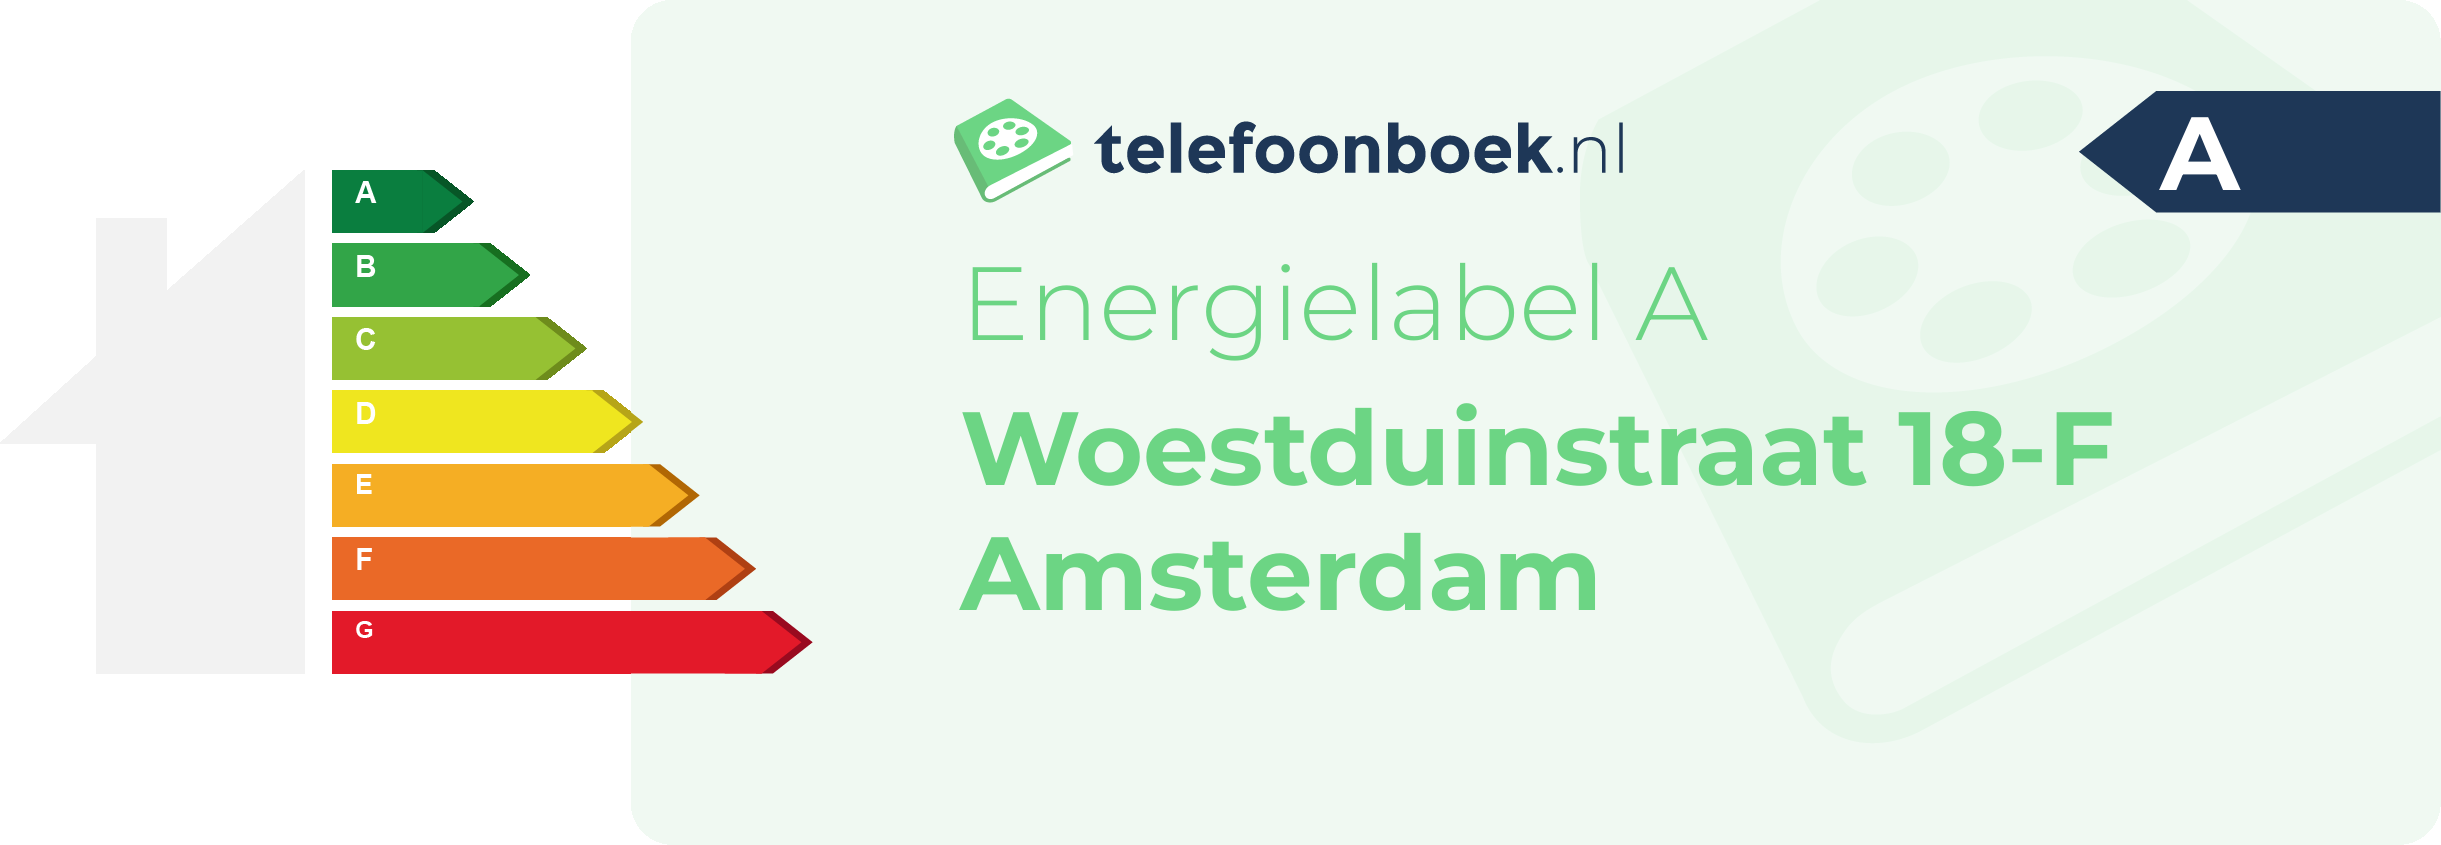 Energielabel Woestduinstraat 18-F Amsterdam